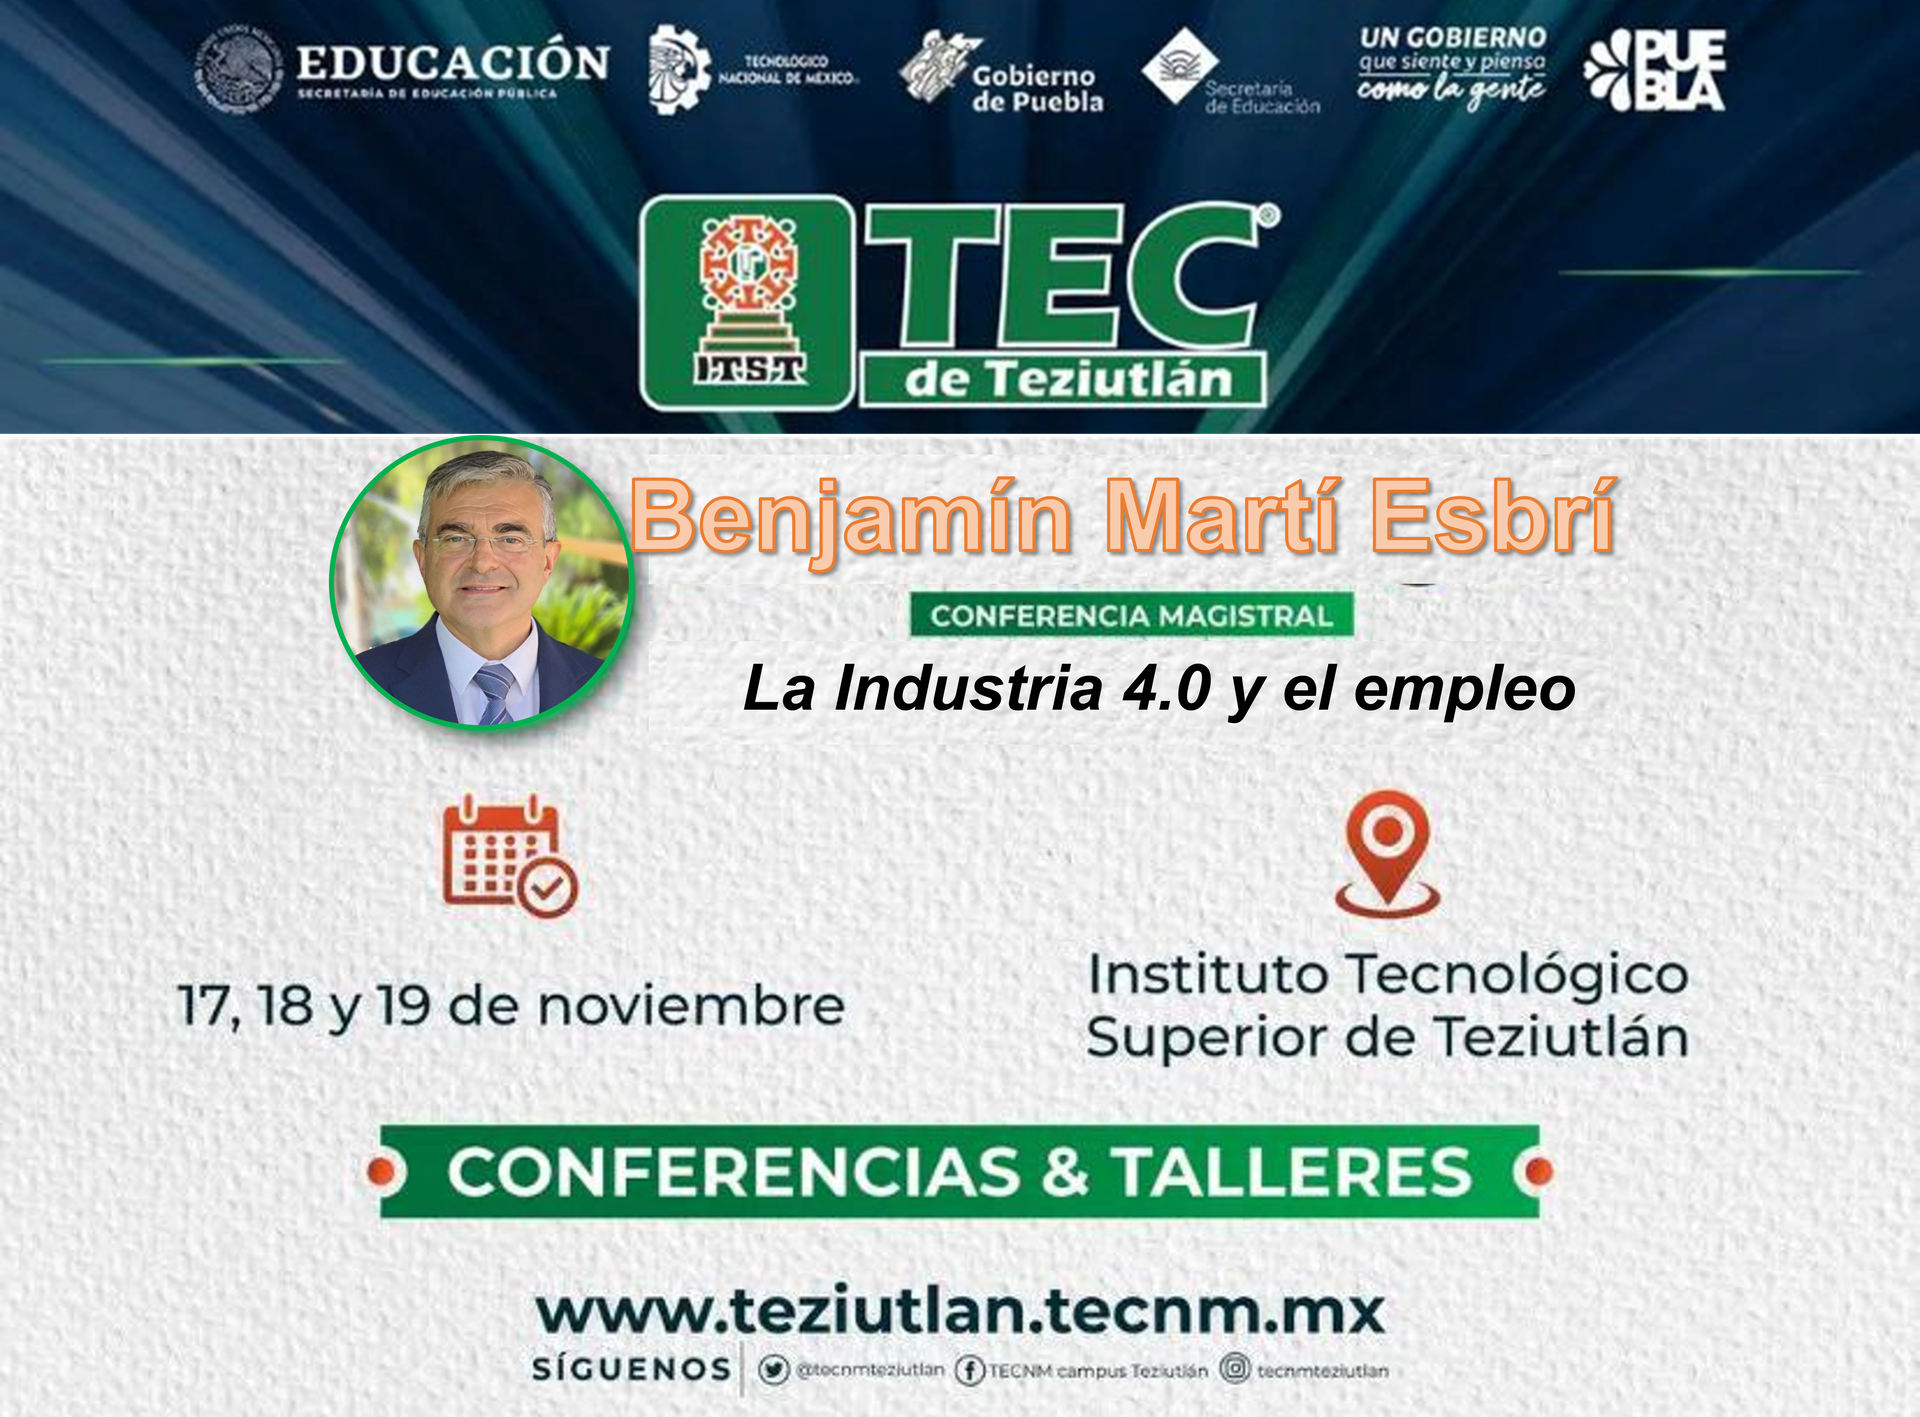 Conferencia TECde TEZIUTLAN (PUEBLA-MEXICO)